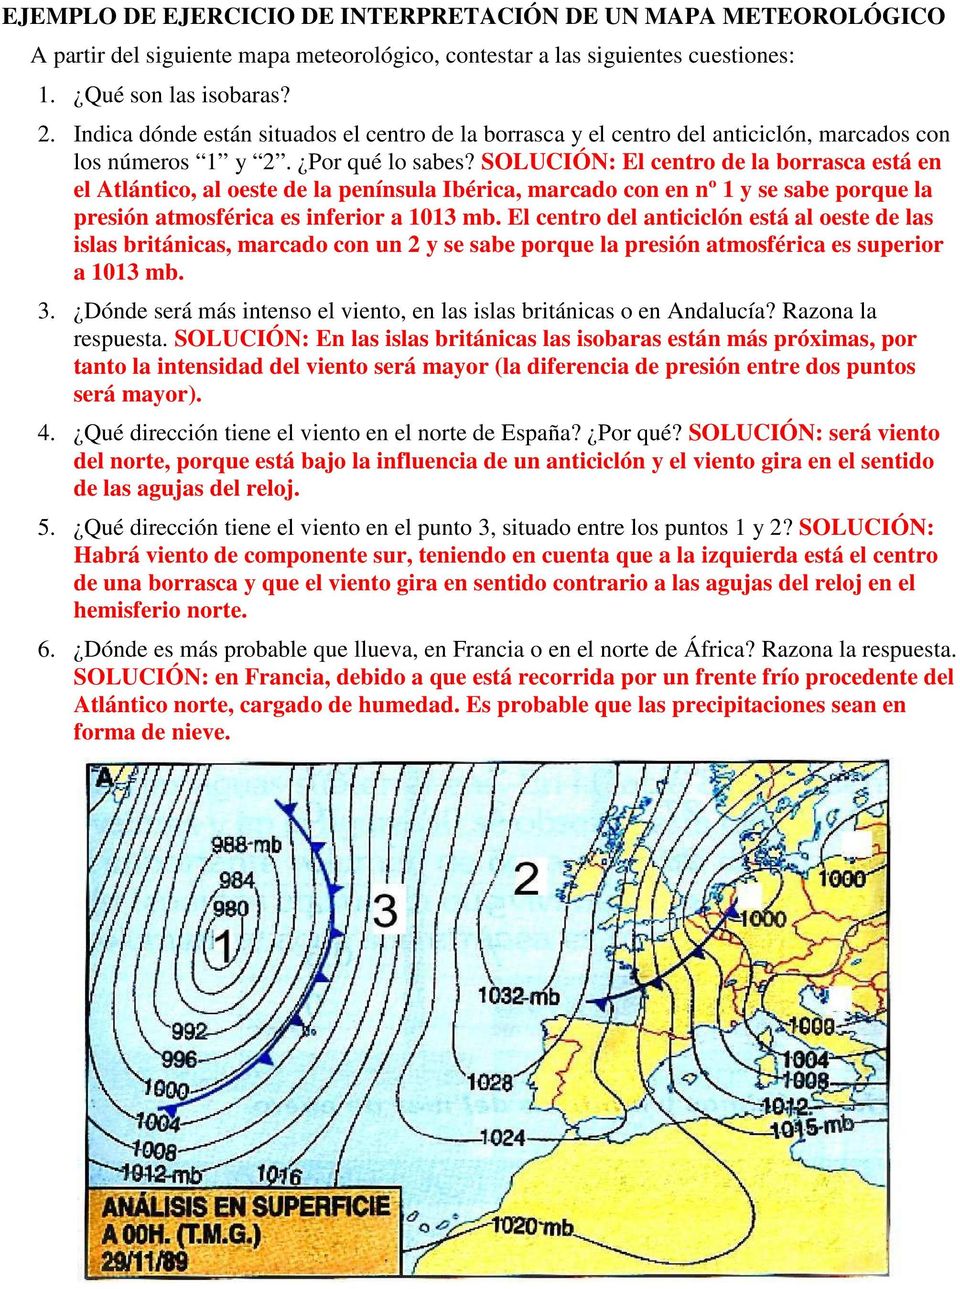 SOLUCIÓN: El centro de la borrasca está en el Atlántico, al oeste de la península Ibérica, marcado con en nº 1 y se sabe porque la presión atmosférica es inferior a 1013 mb.